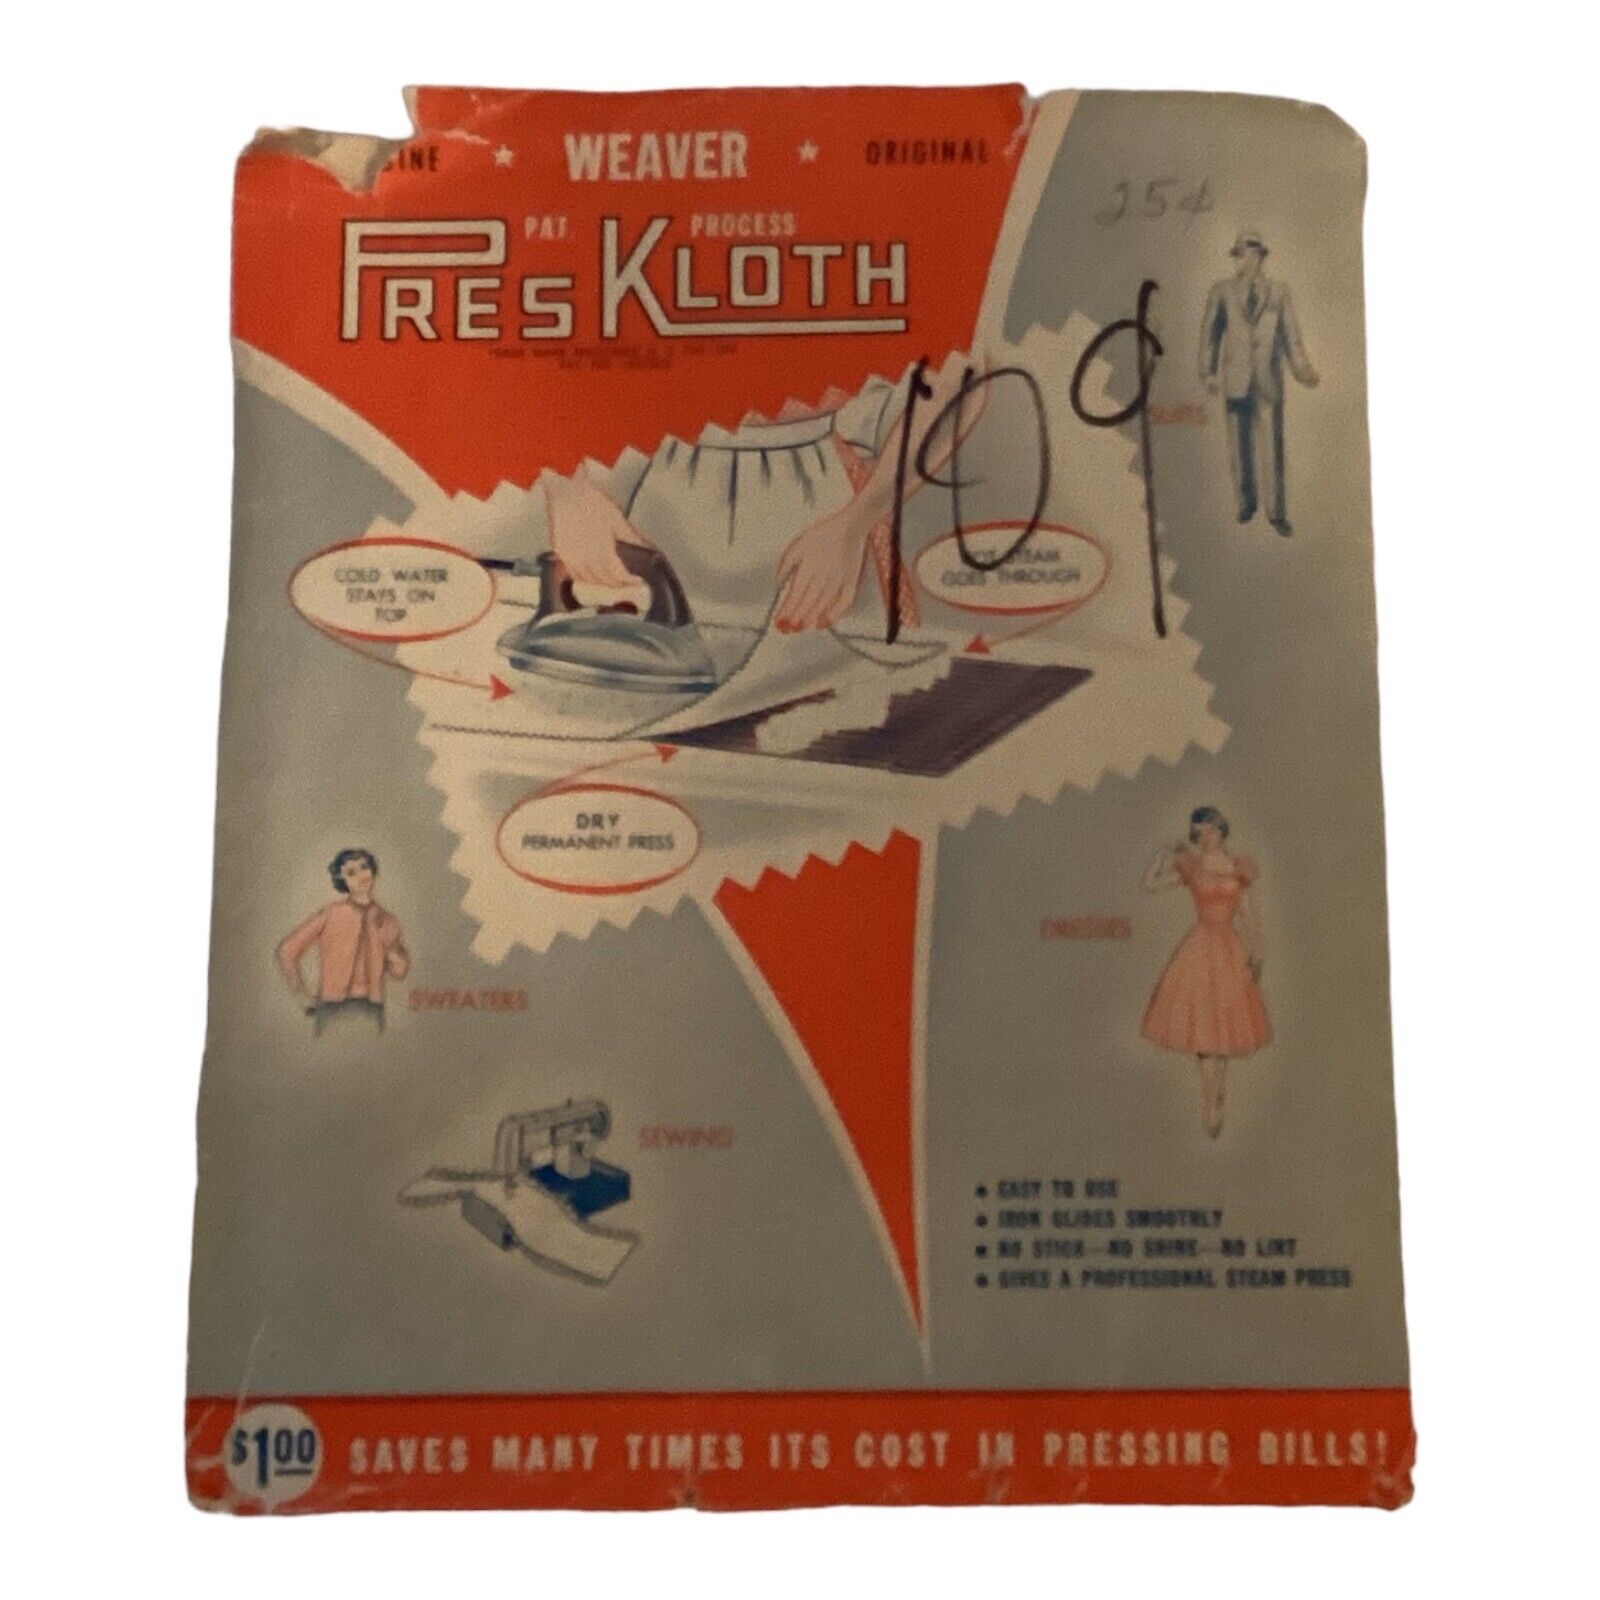 Vintage Pres Kloth Ironing Cloth NWOT